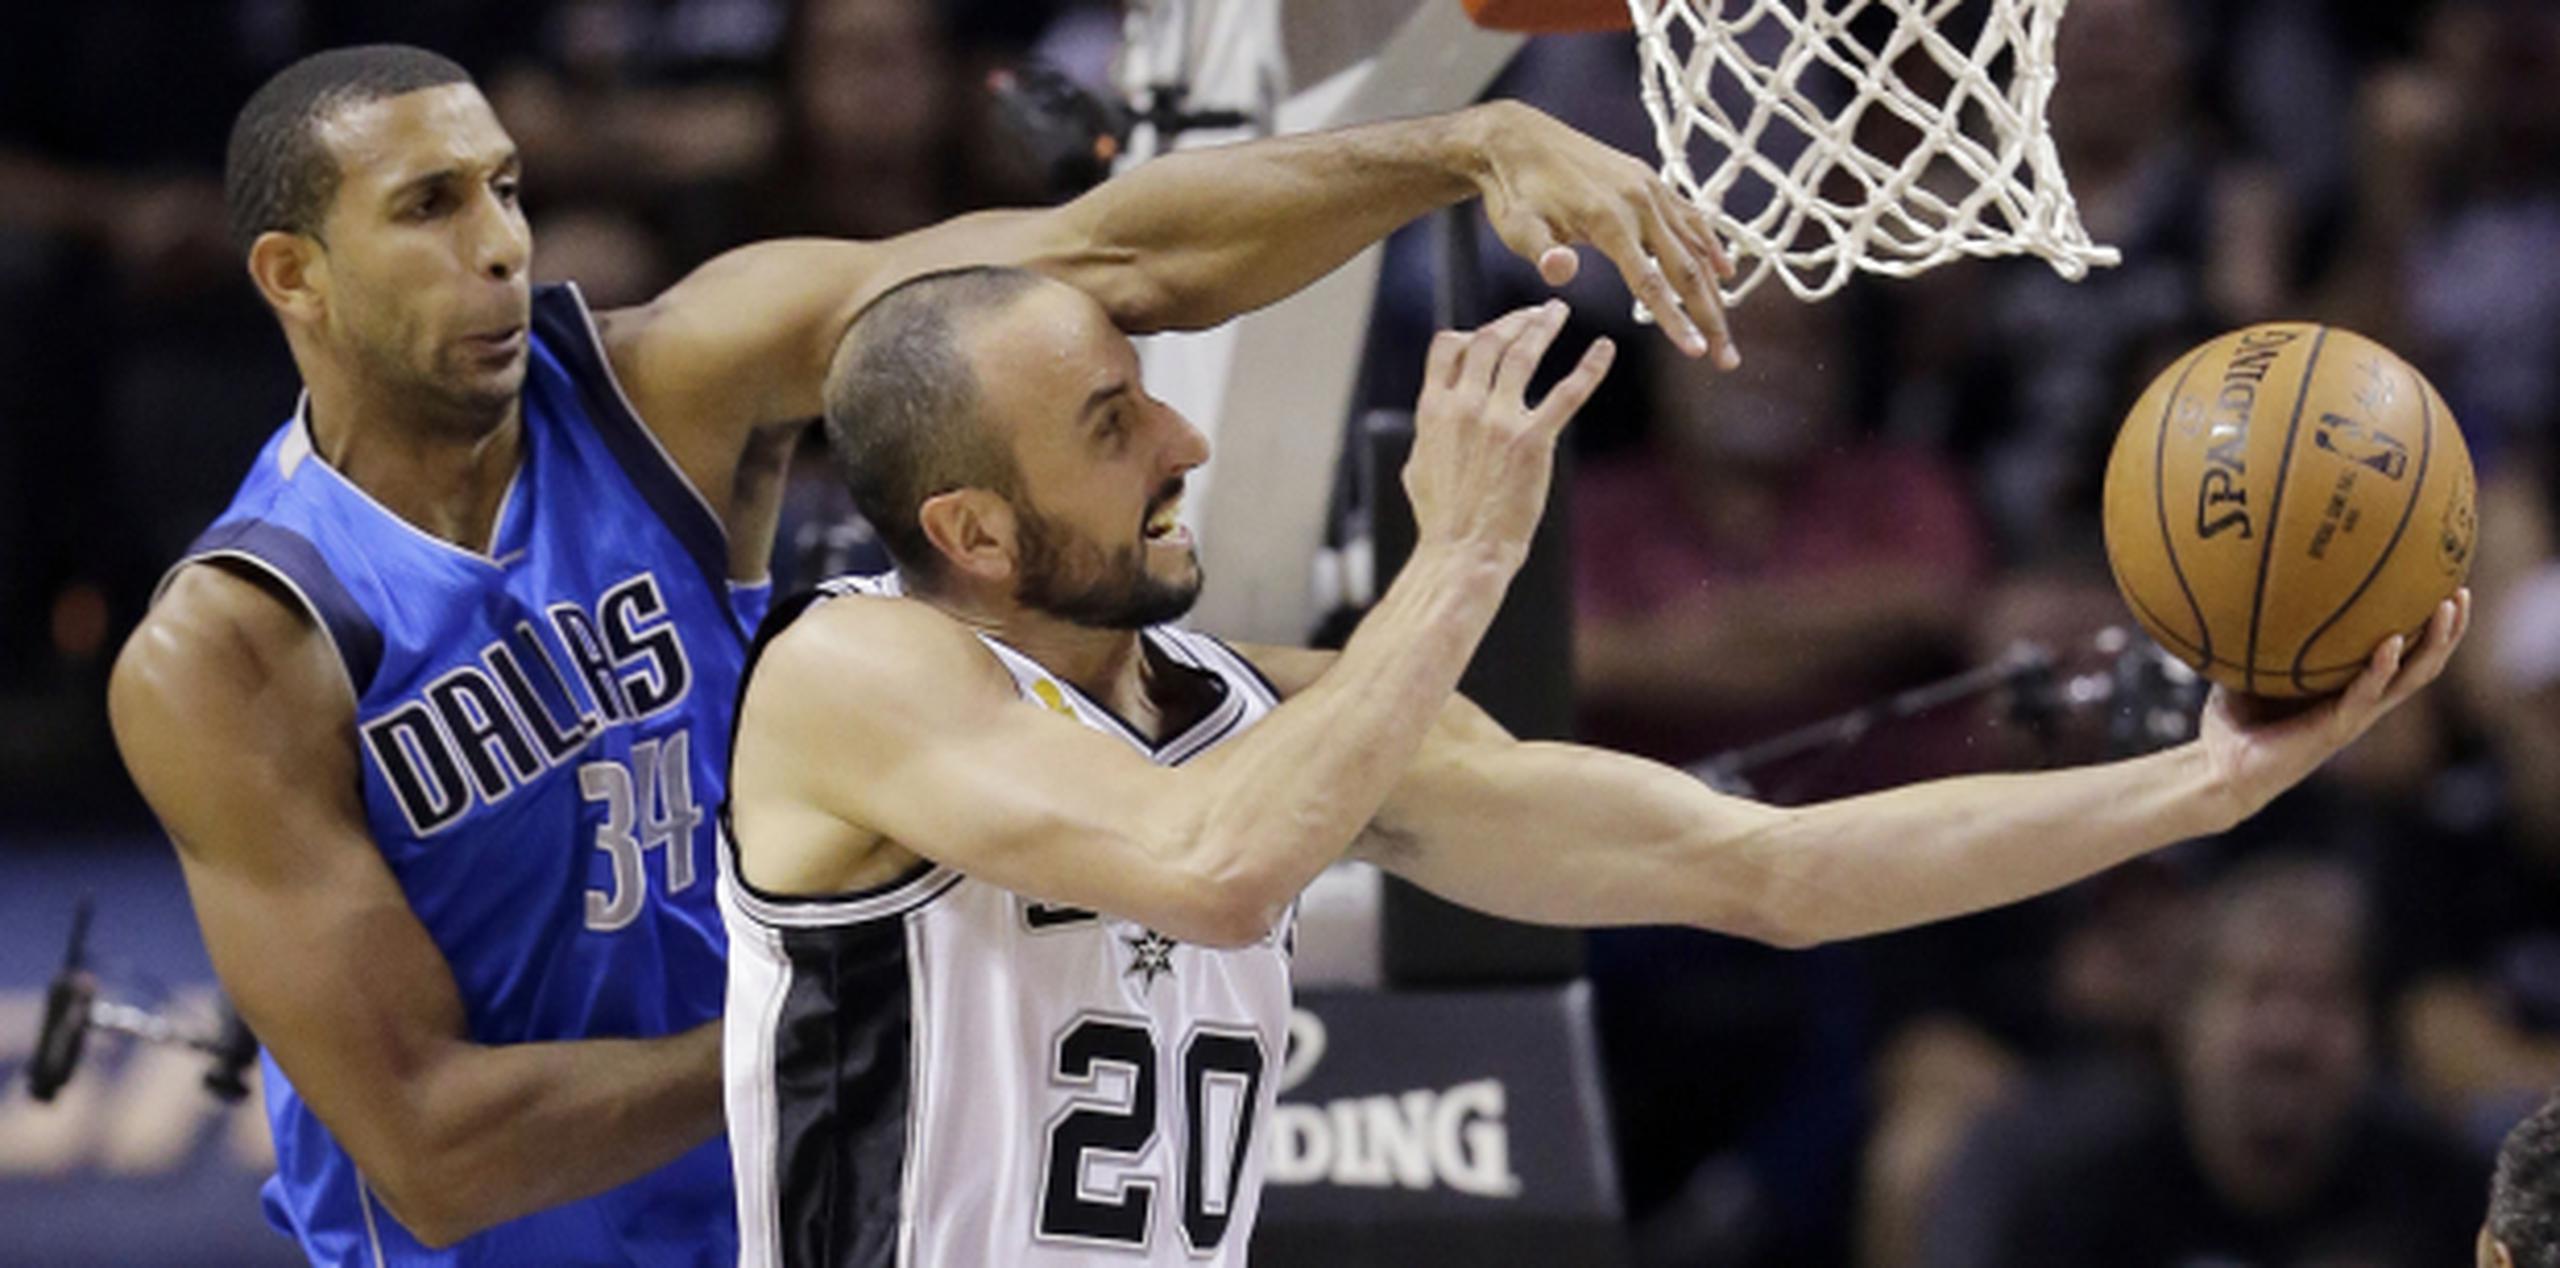 Los Spurs de San Antonio cuentan con nueve jugadores internacionales, entre ellos el argentino Manu Ginobili. (AP/Eric Gay)